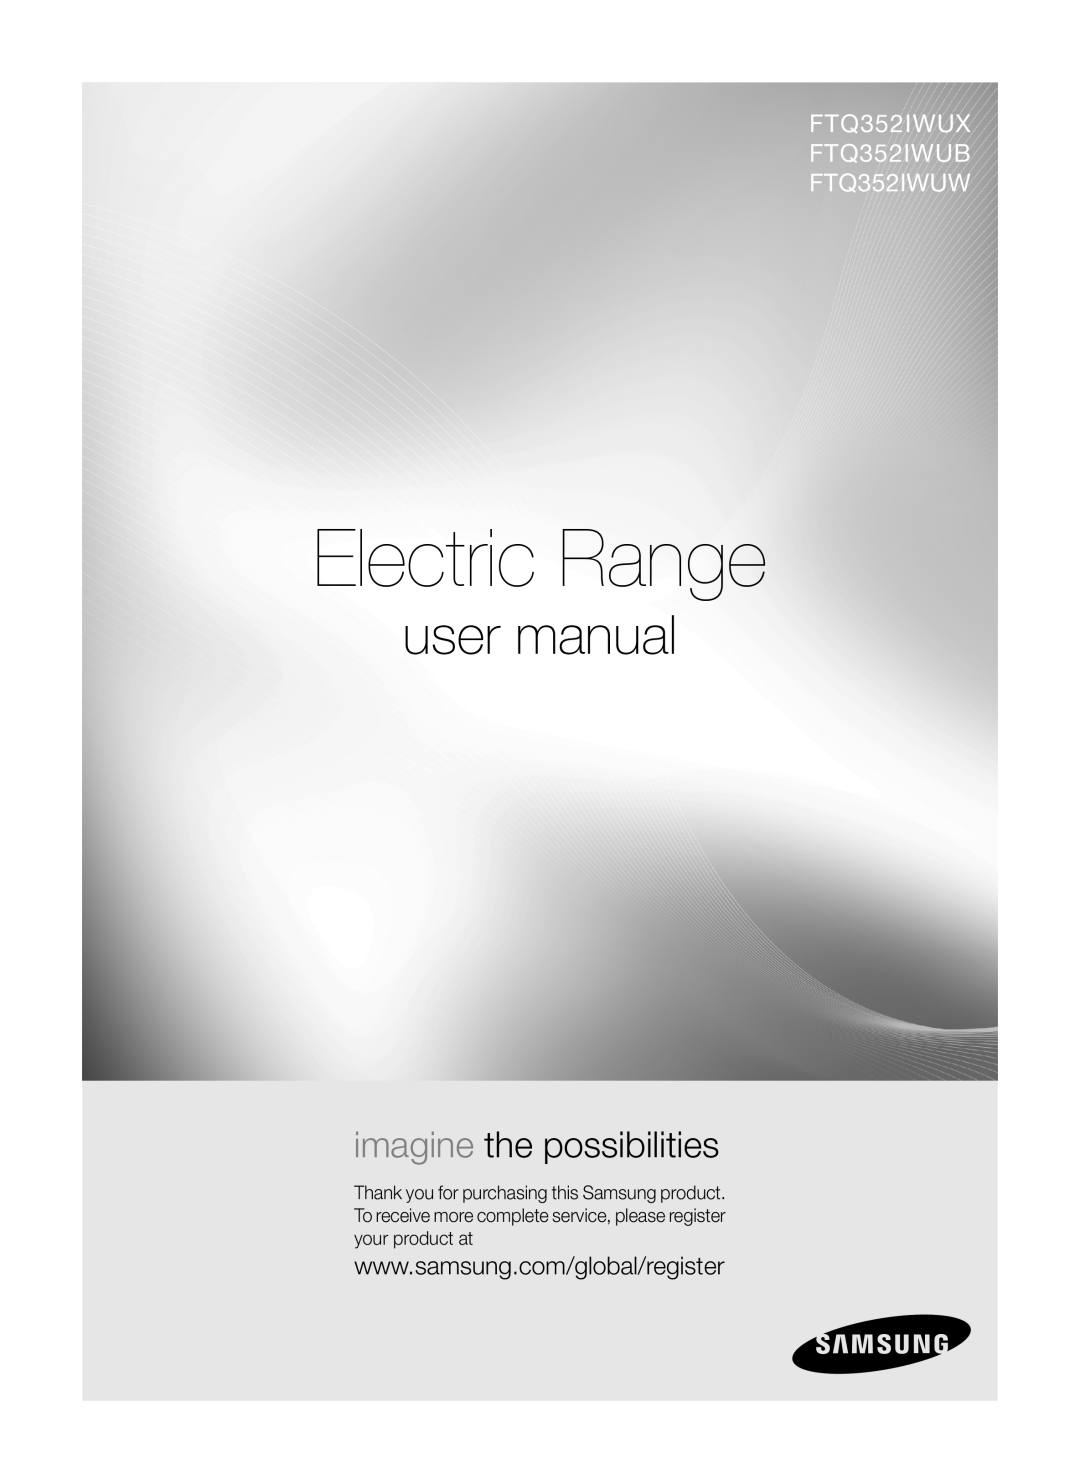 Samsung user manual Electric Range, imagine the possibilities, FTQ352IWUX FTQ352IWUB FTQ352IWUW 